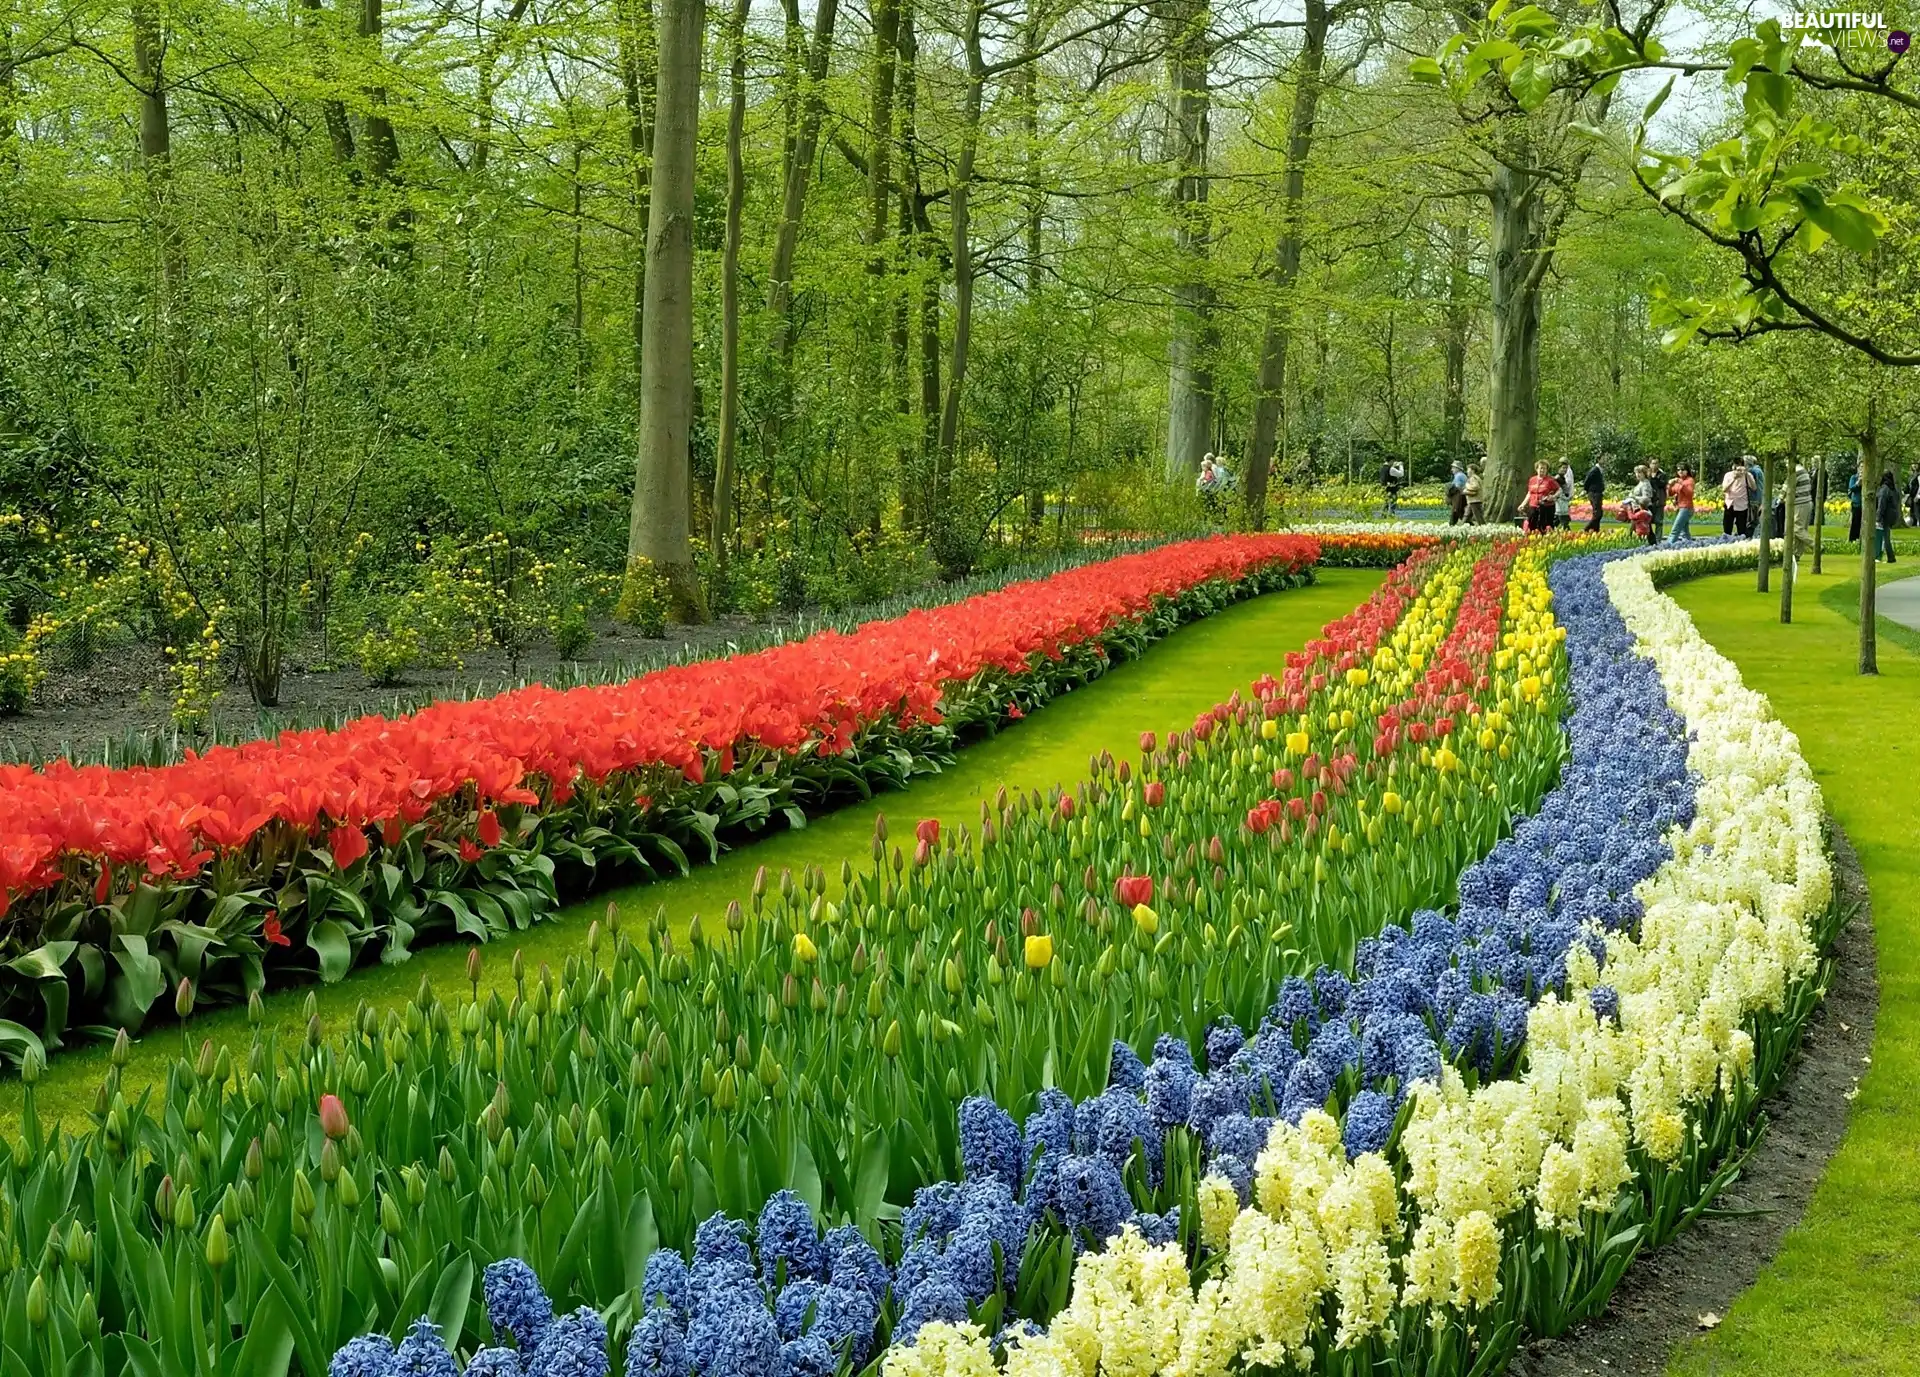 Tulips, walkers, Park, Hyacinths, Spring